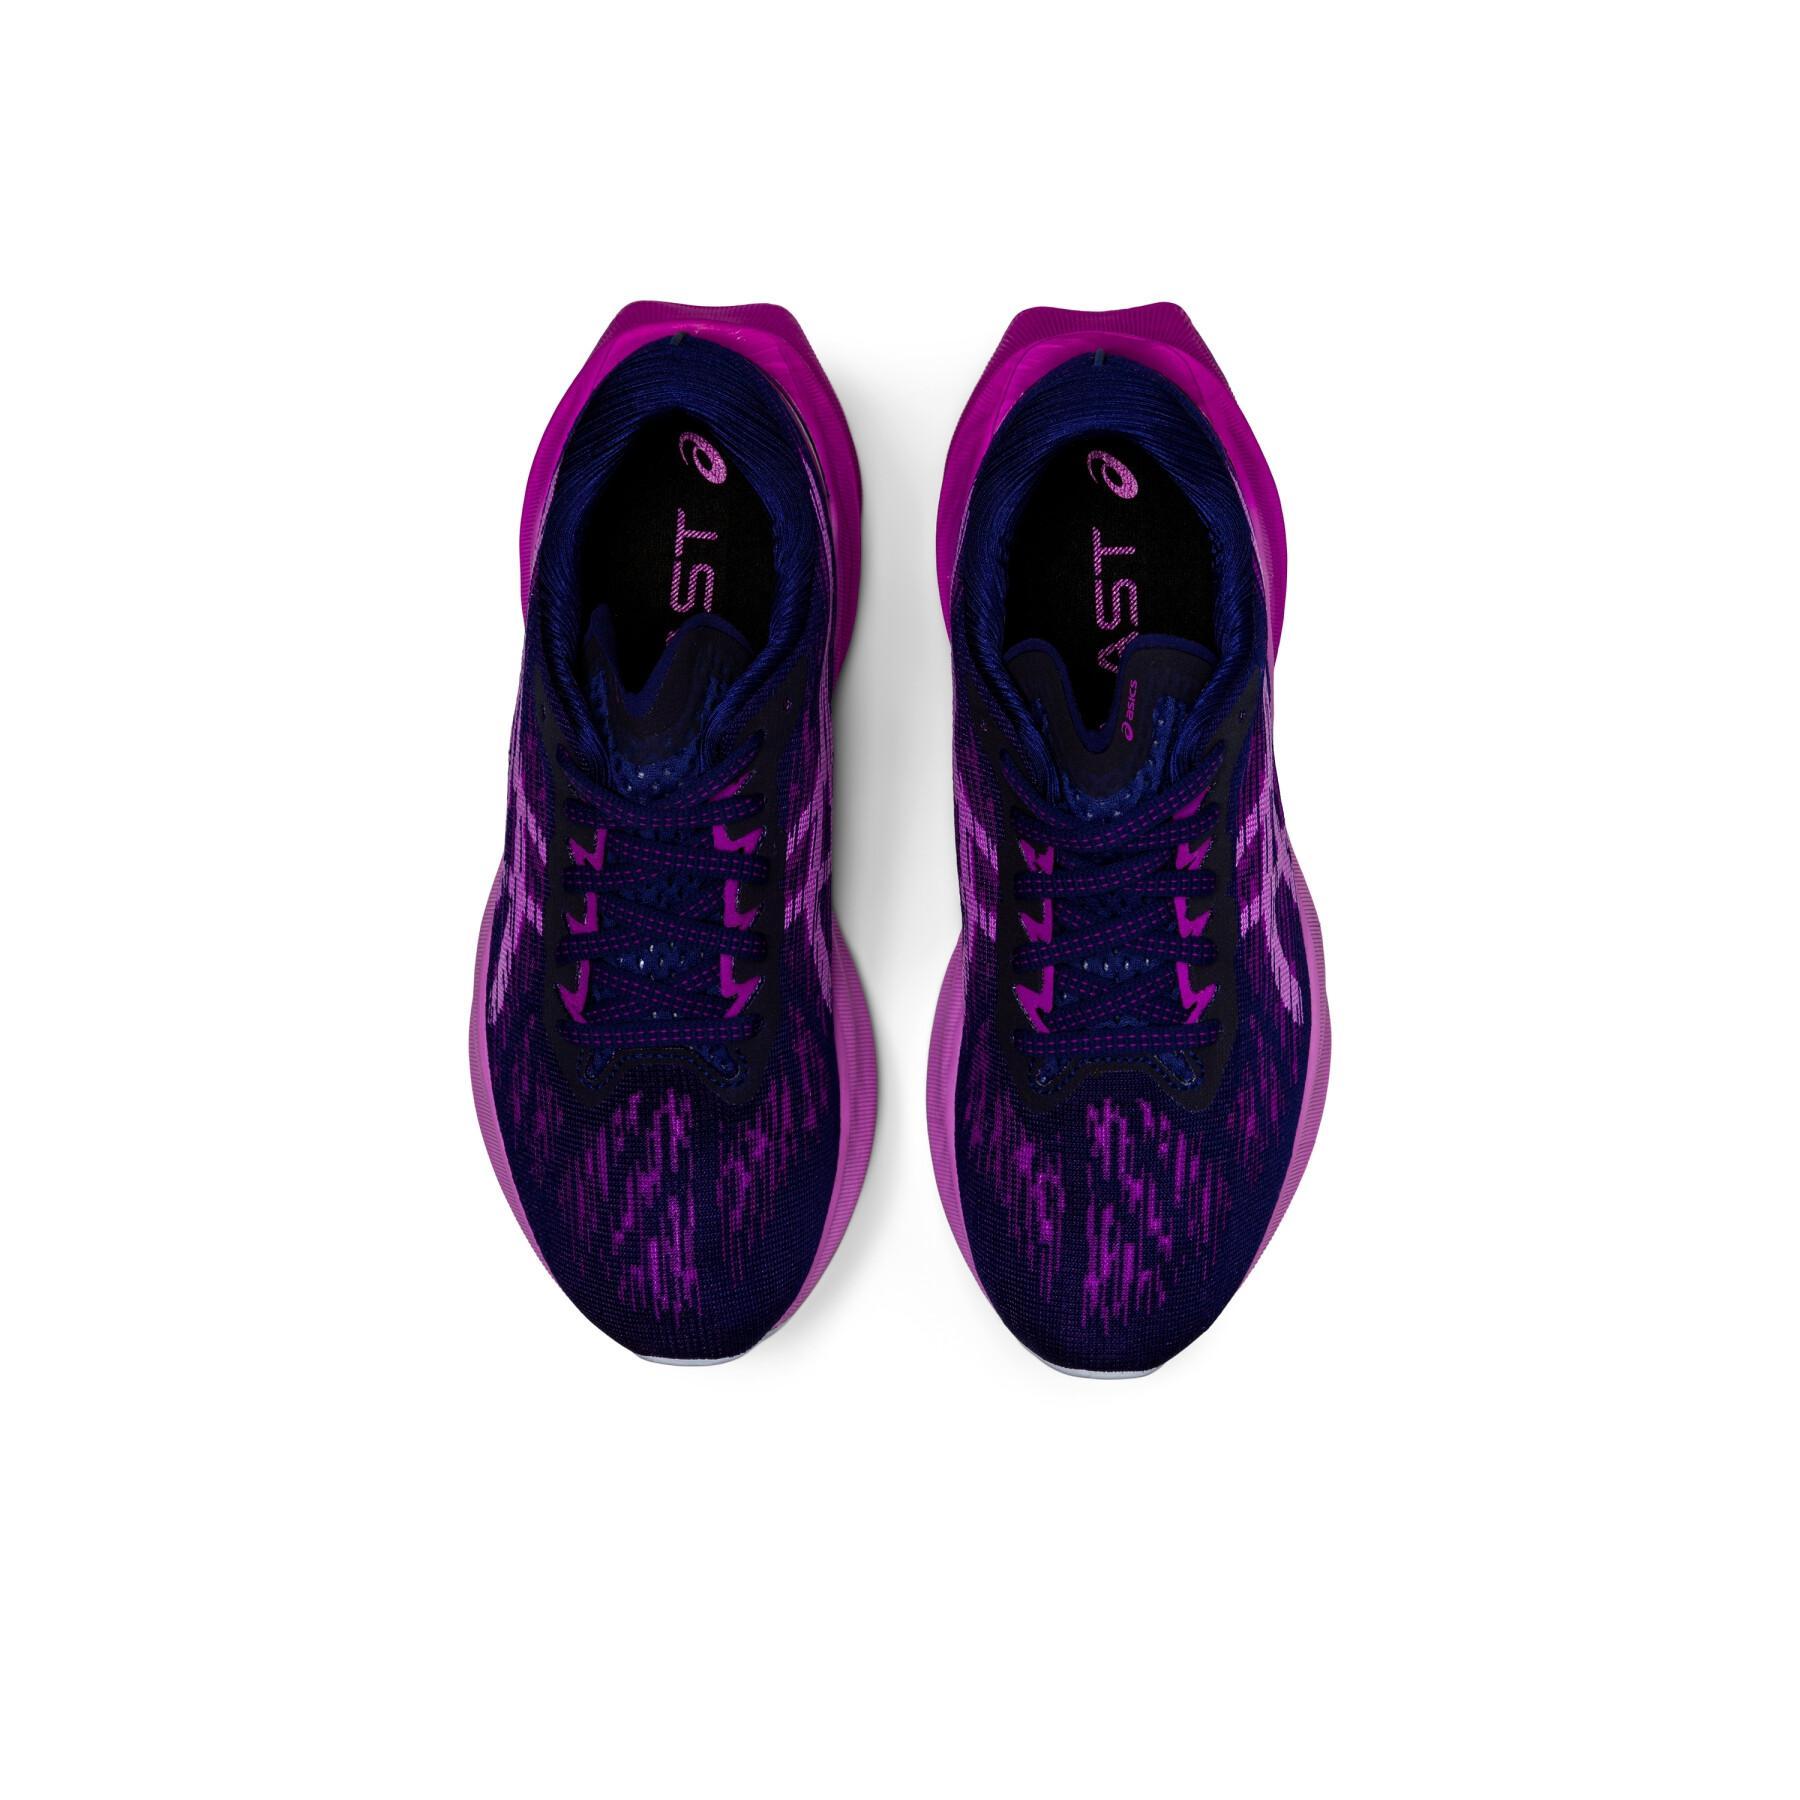 Women's running shoes Asics Novablast 3